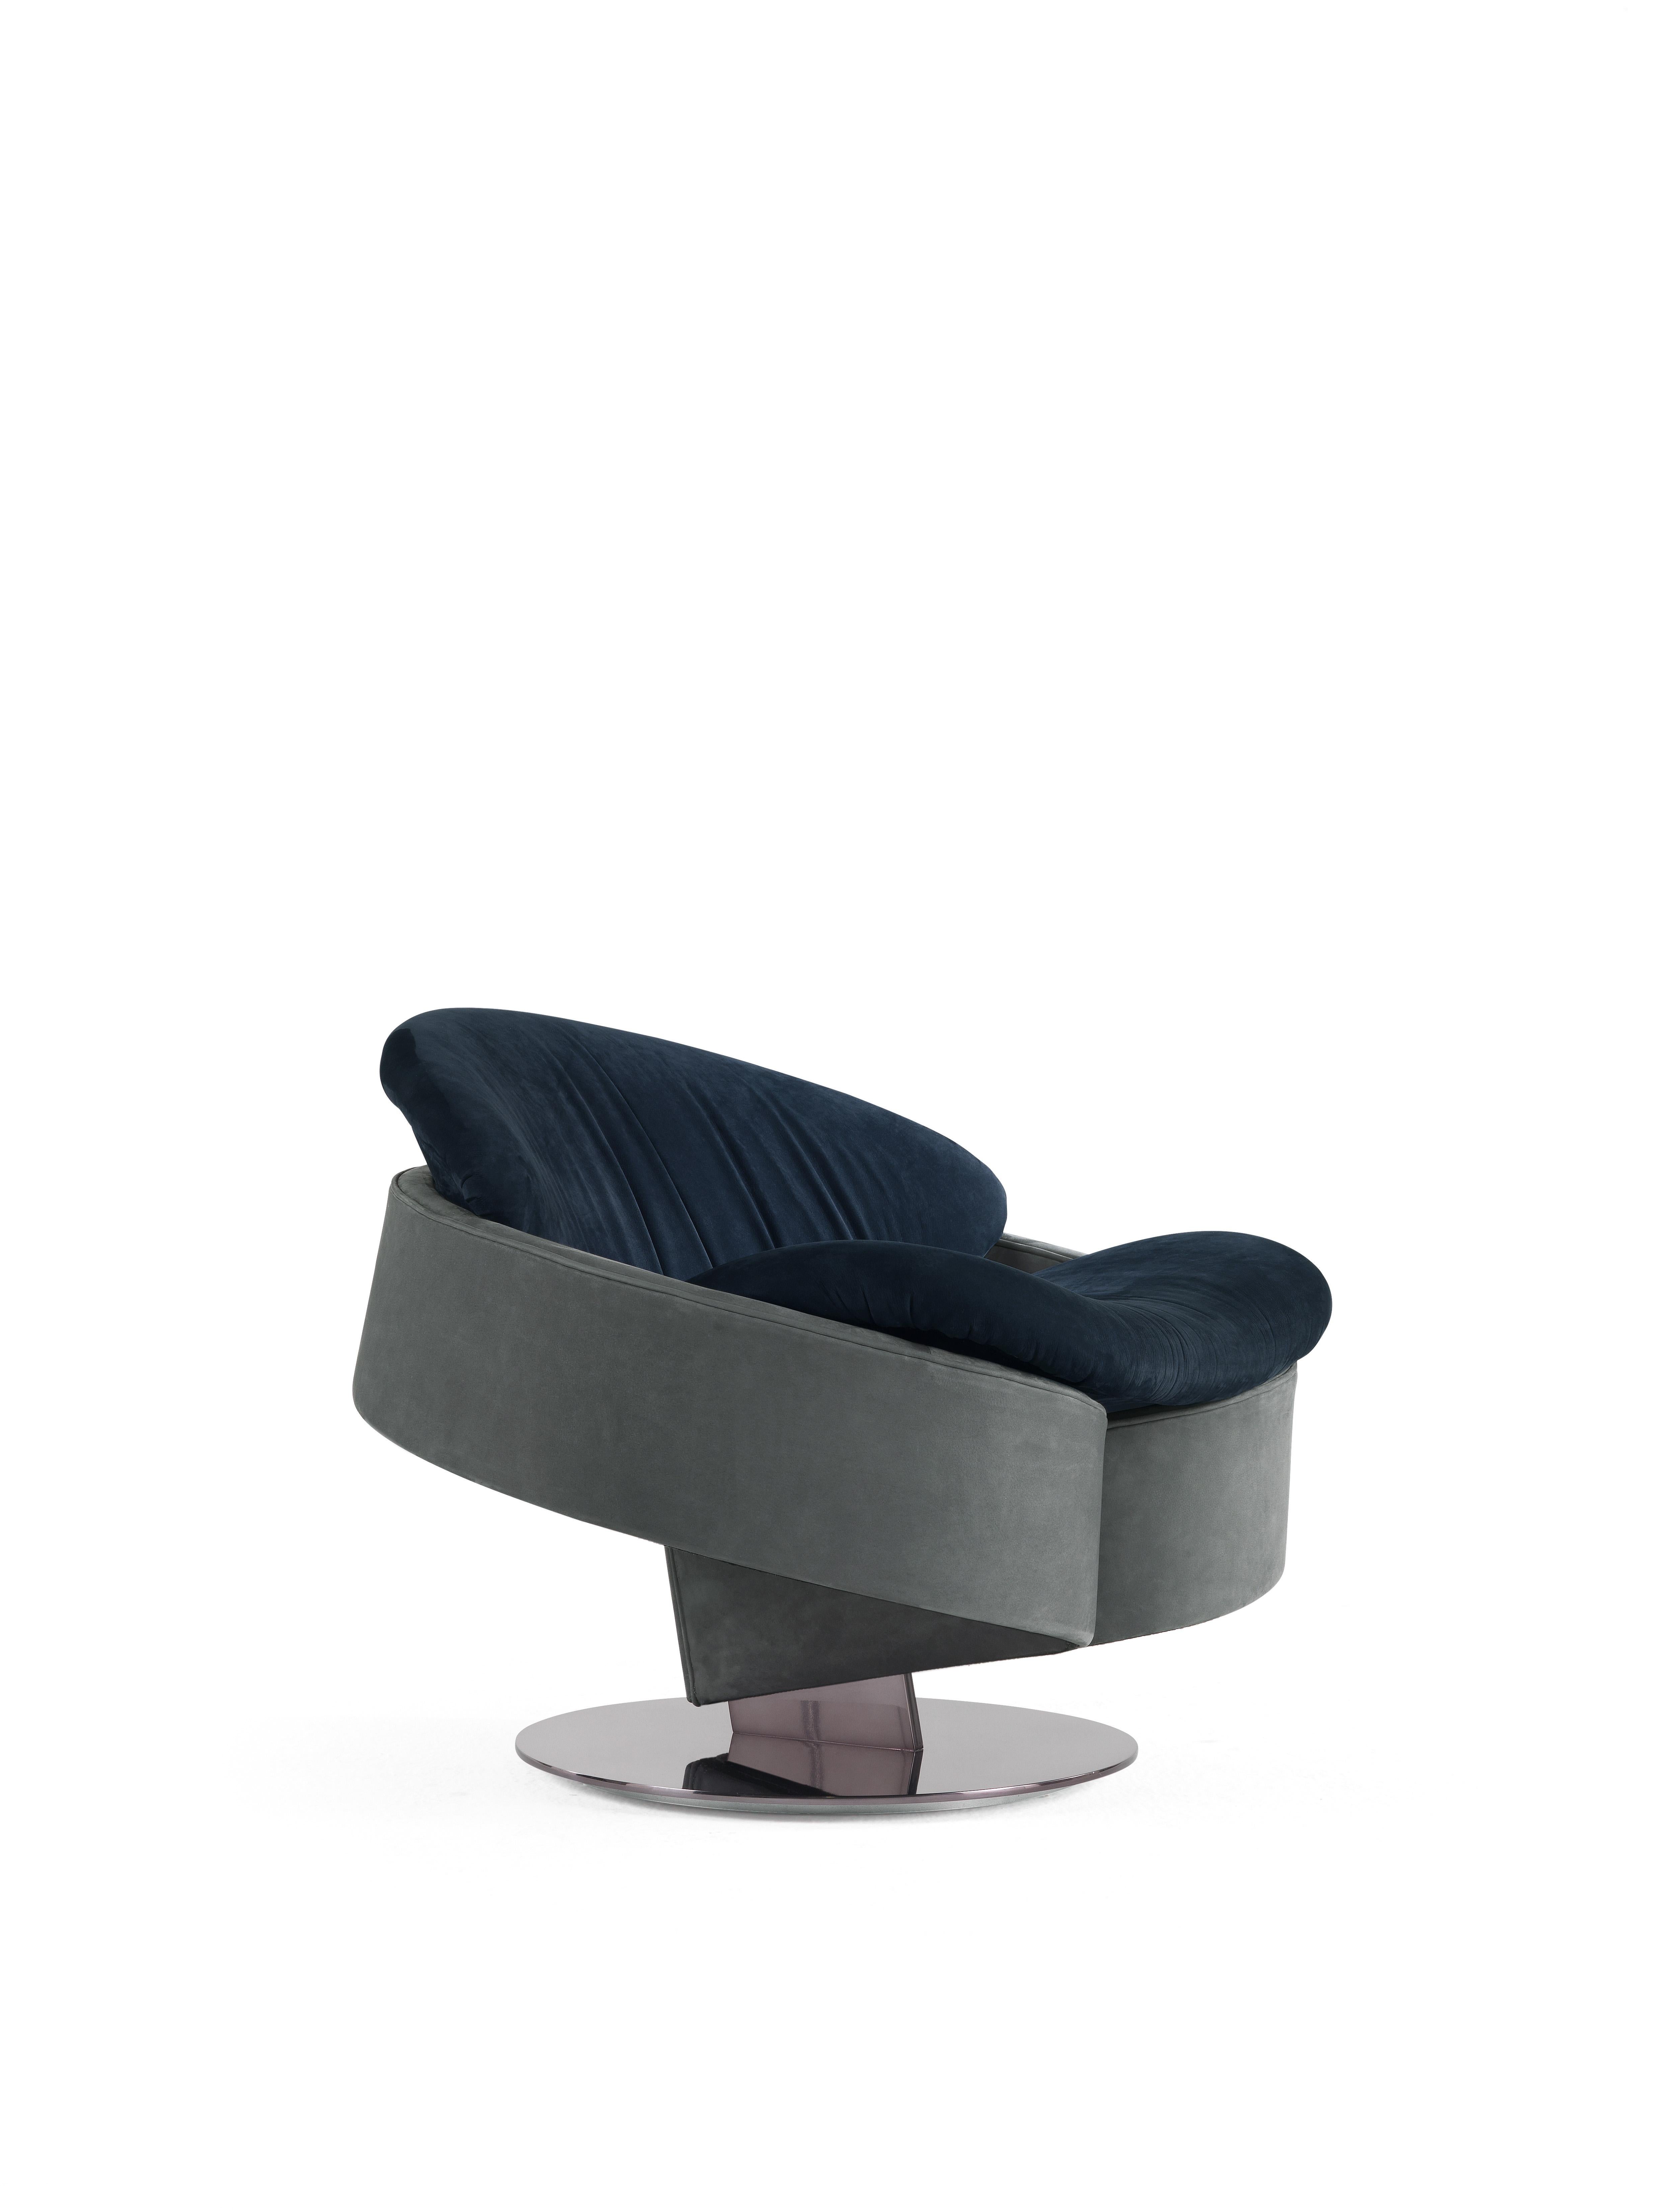 Der auf dem Salone del Mobile 2018 erstmals vorgestellte Sessel Sherlock wird in der Kollektion 2019 mit Lederbezug und einem schwarz verchromten Drehgestell angeboten. Der Sessel Sherlock zeichnet sich durch ein Stahlgestell mit einem einzigen